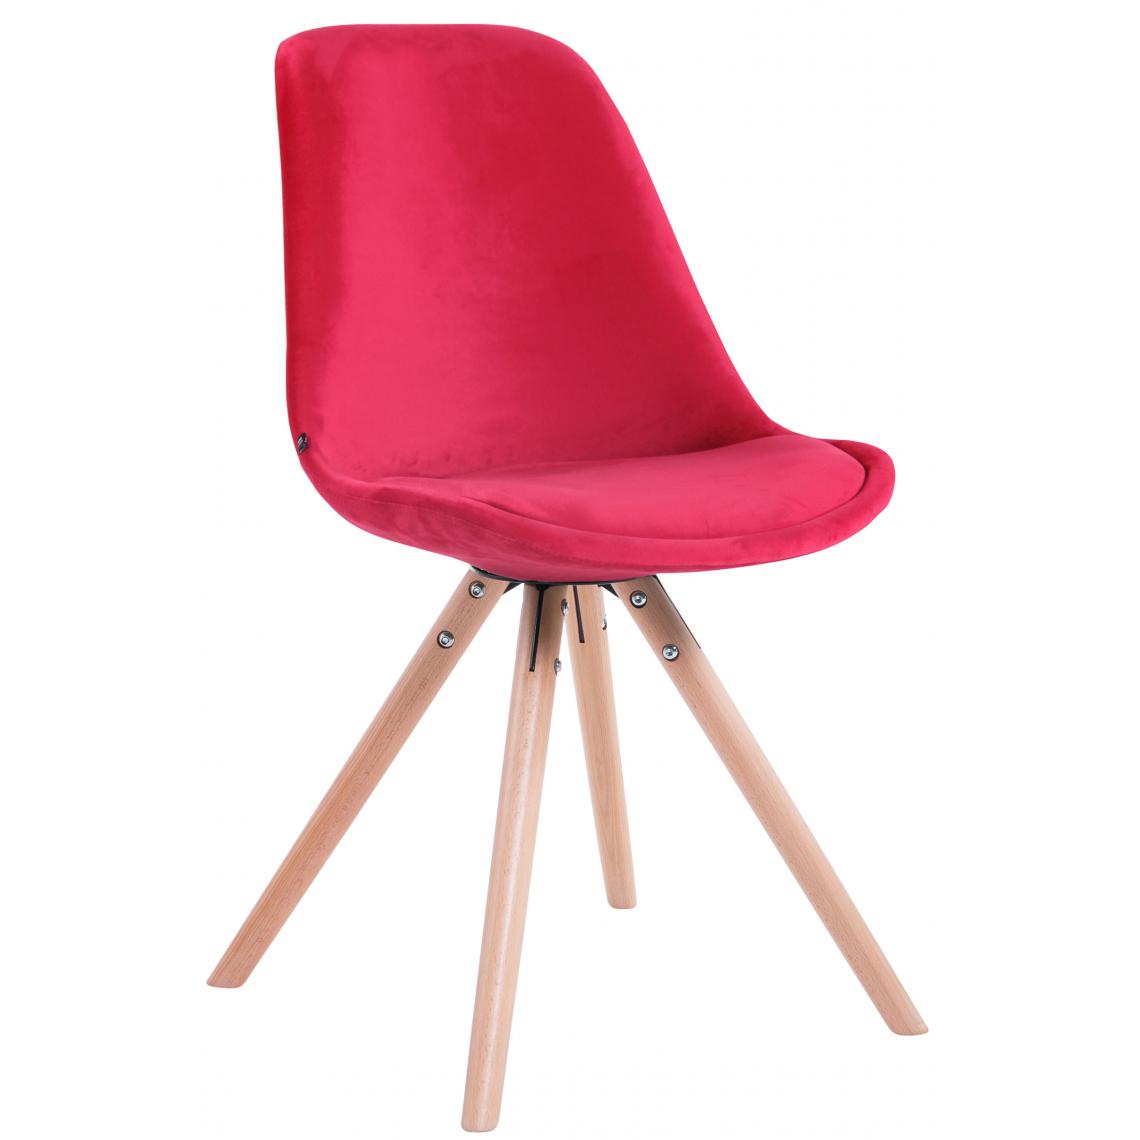 Icaverne - Moderne Chaise visiteur ronde en velours selection Katmandou naturel couleur rouge - Chaises